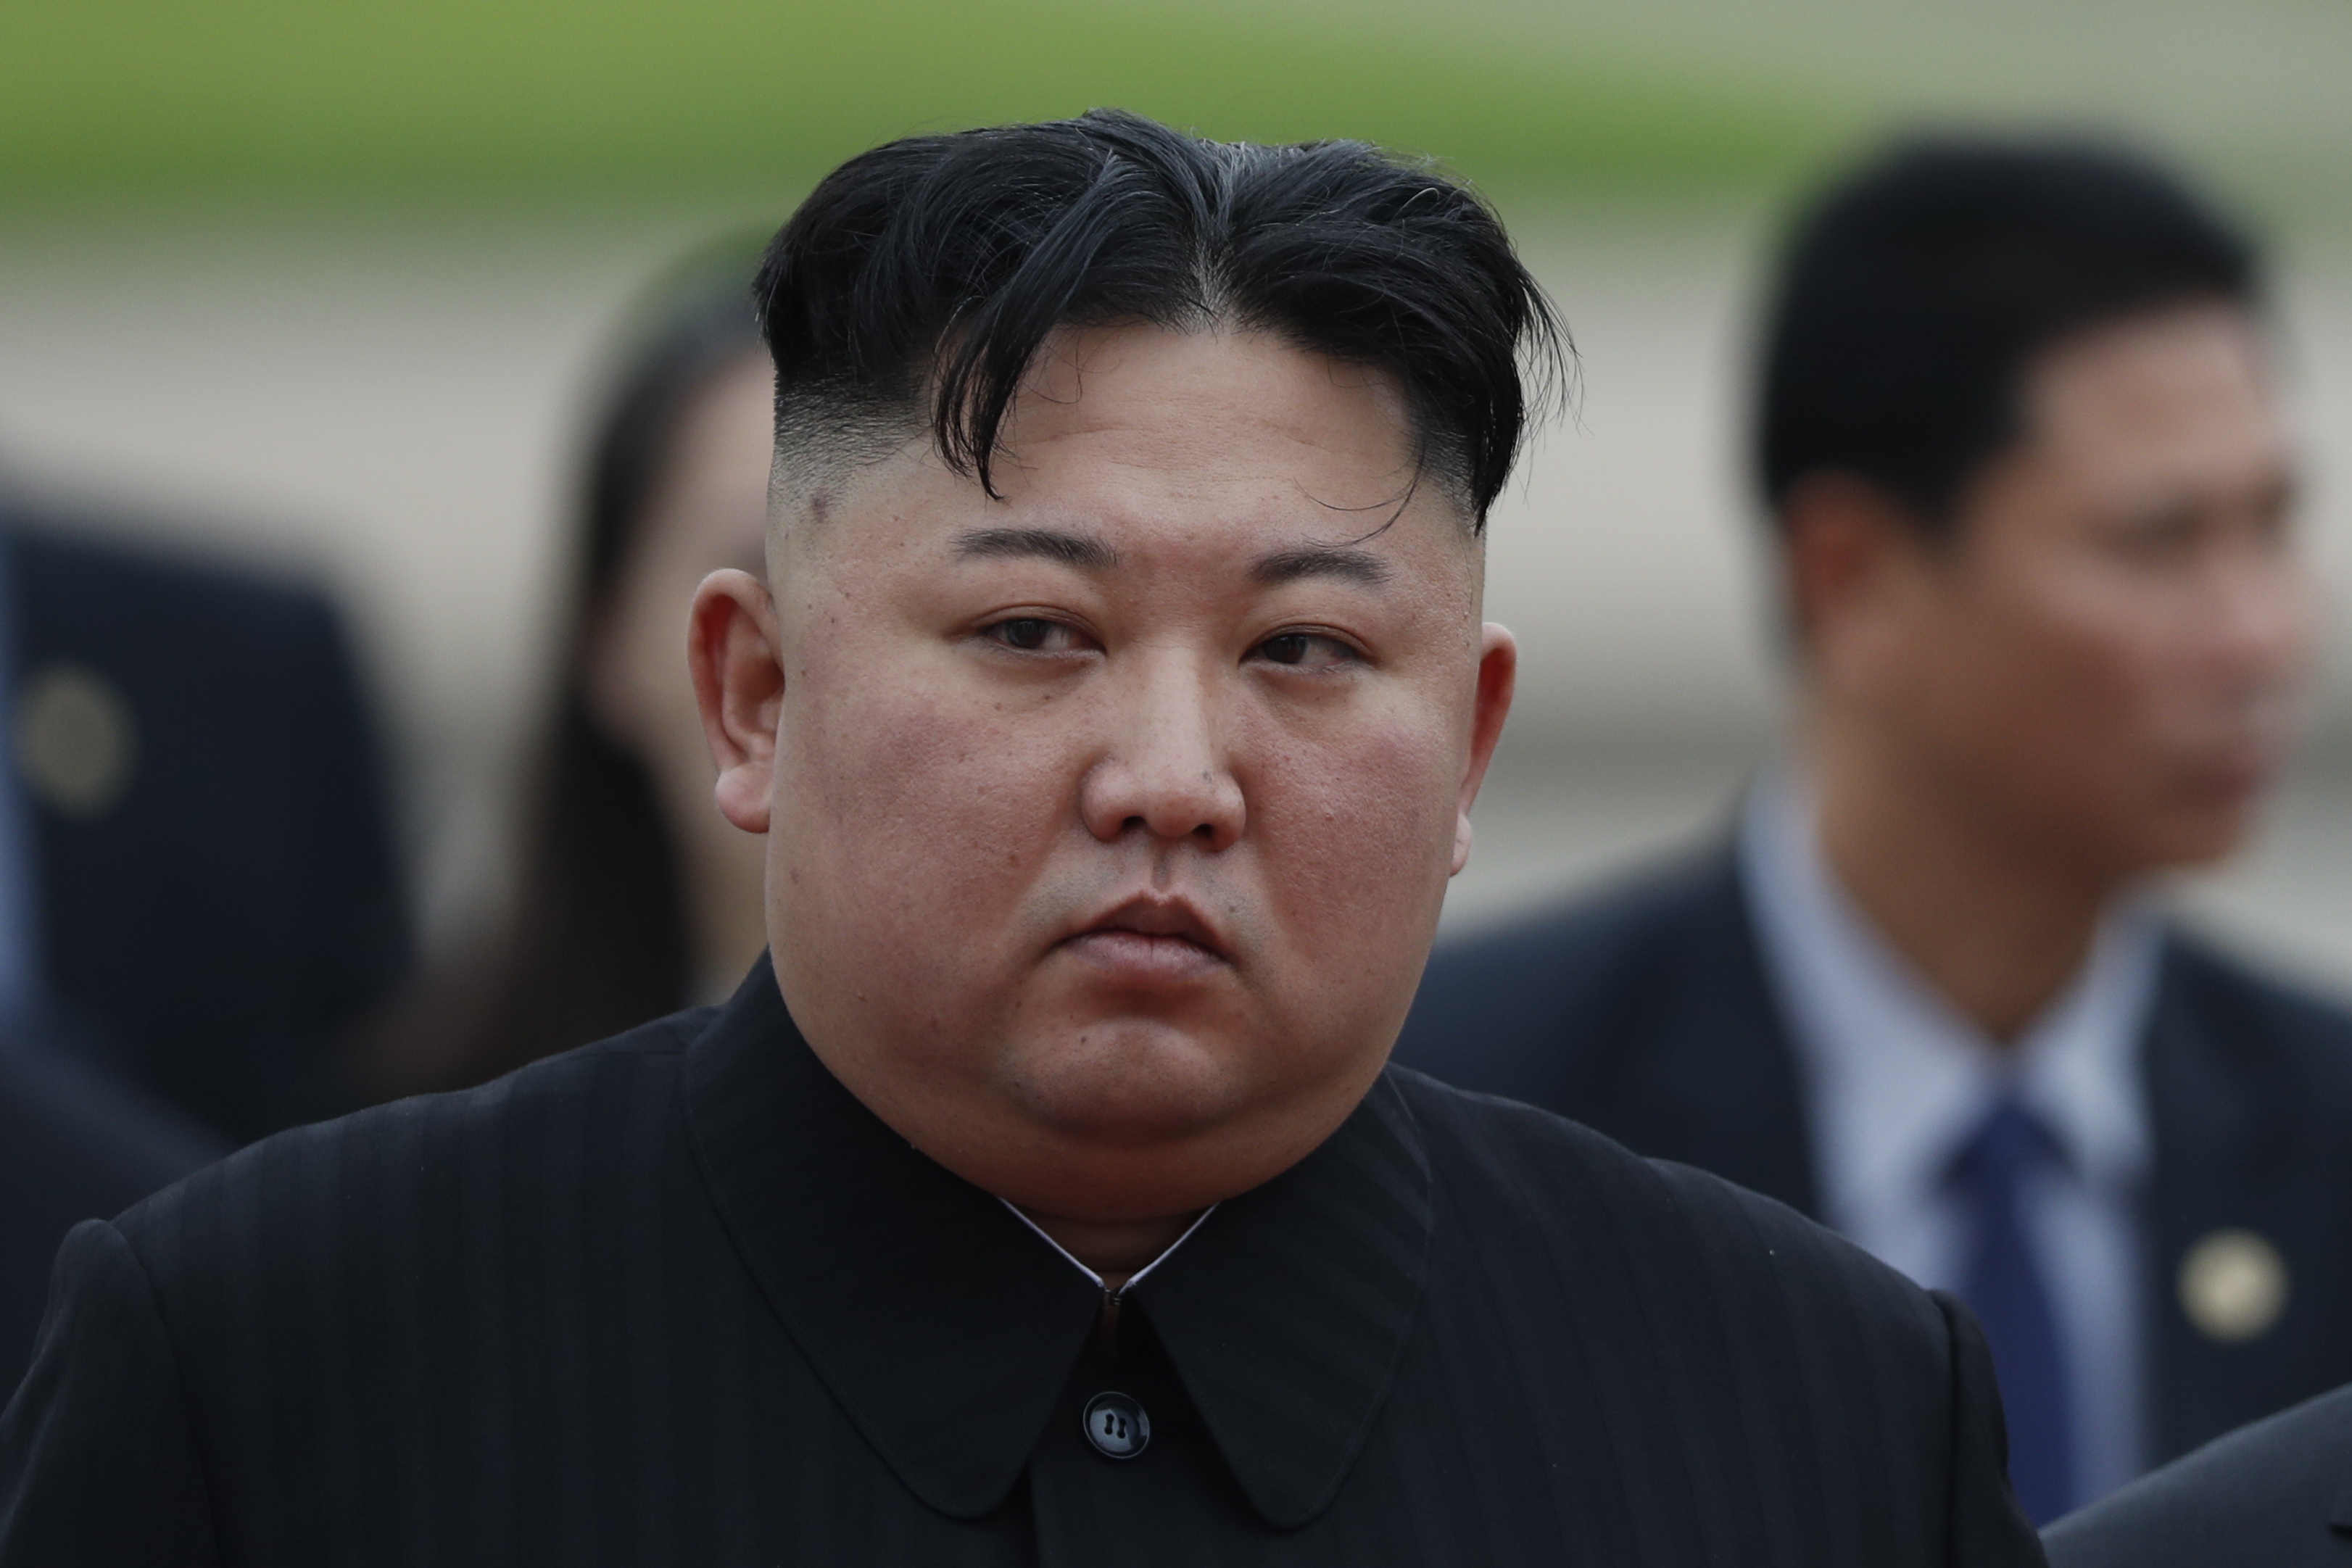 EEUU avisa a Corea del Norte de “consecuencias” por sus lanzamientos de misiles